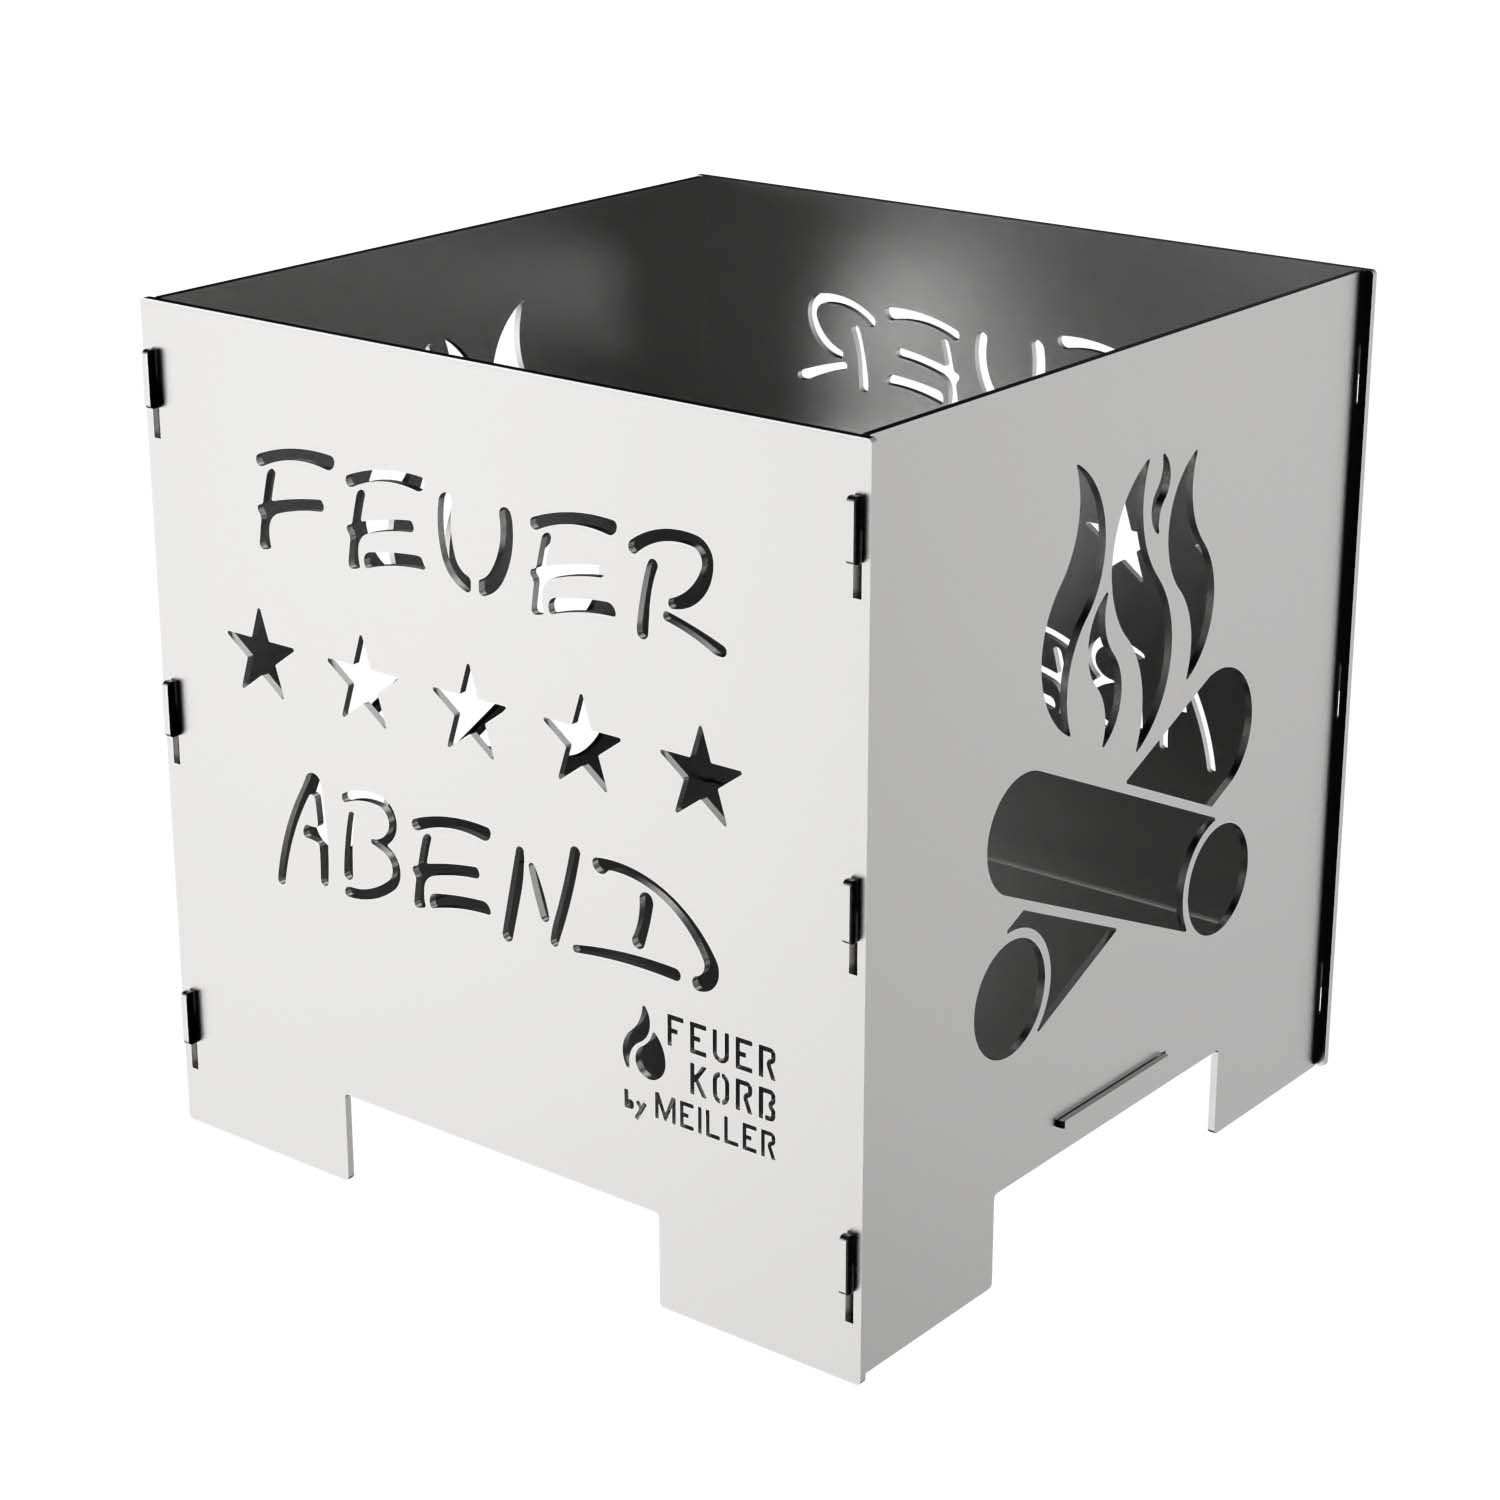 Feuerwürfel Feuerkorb aus Stahl, Motiv Feuerabend, 45 x 45 x 45 cm, Materialstärke 4 mm